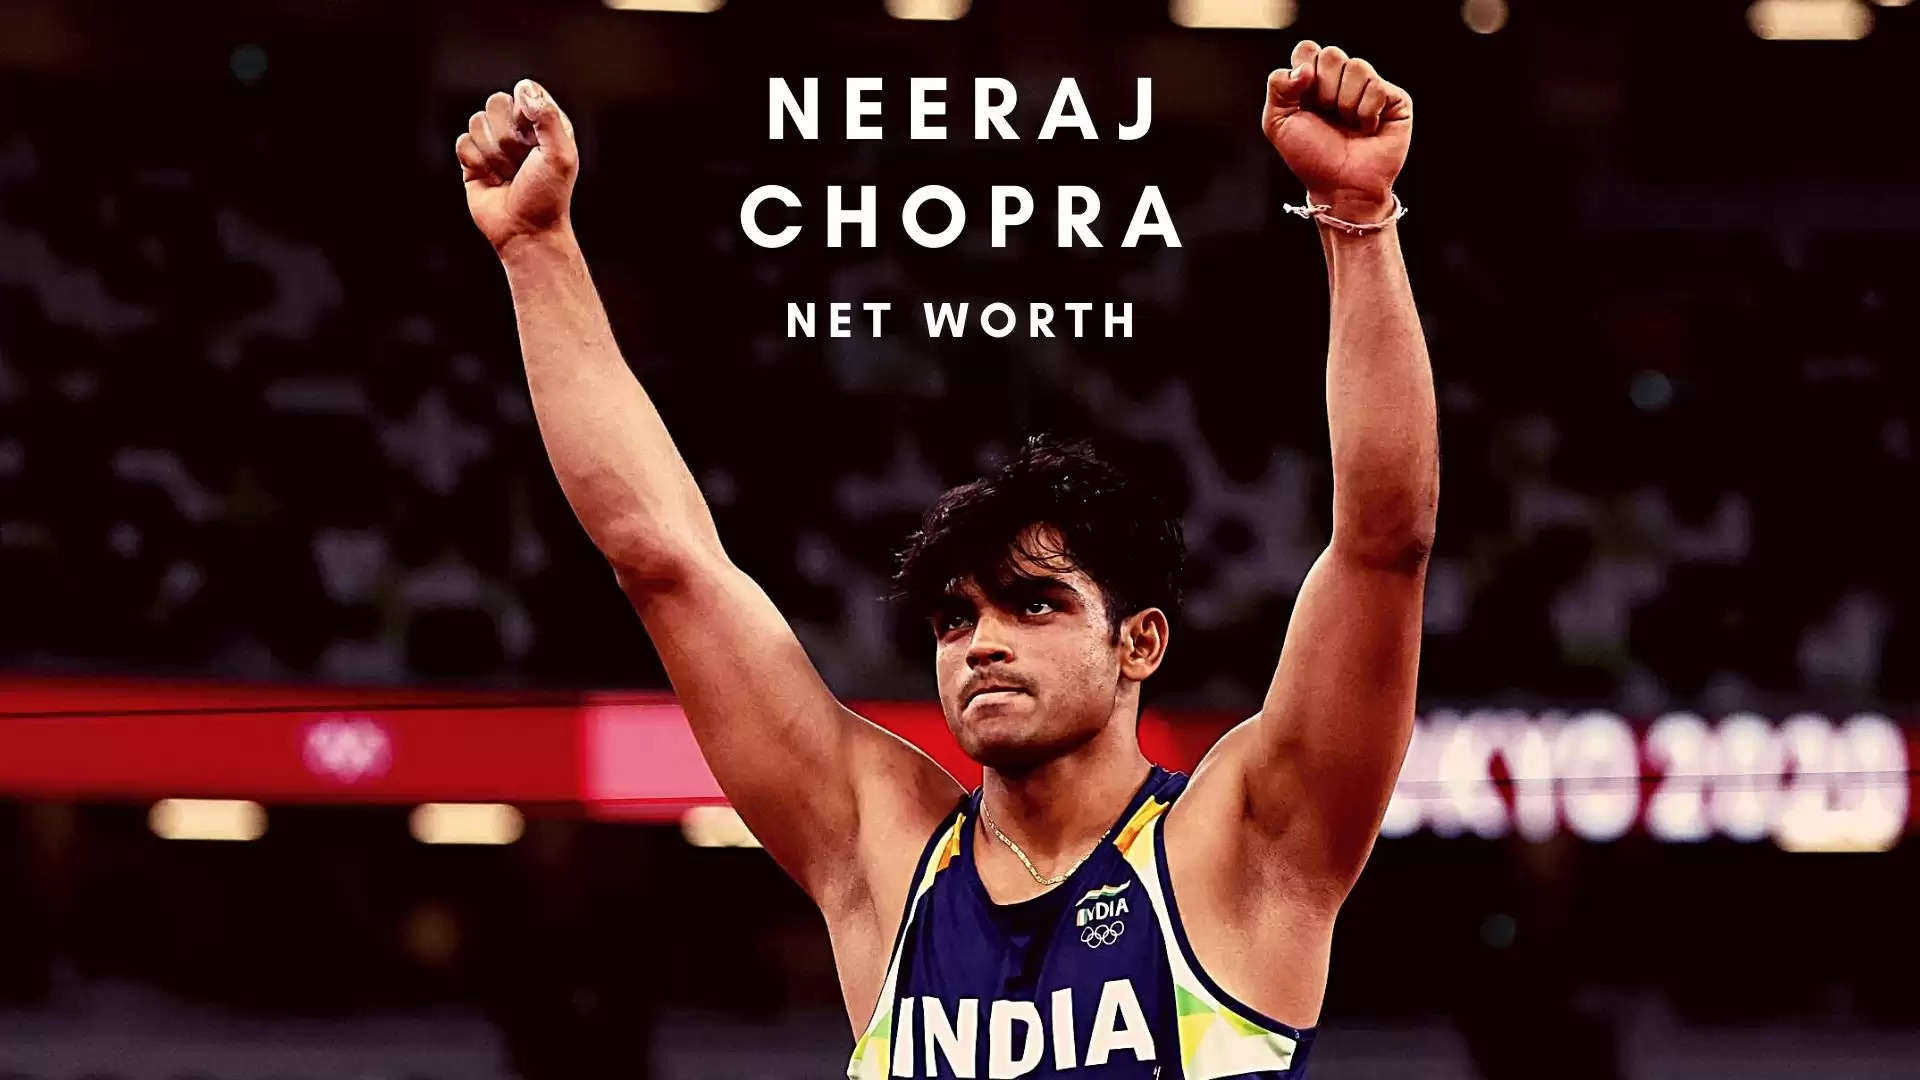 Neeraj chopra net worth 